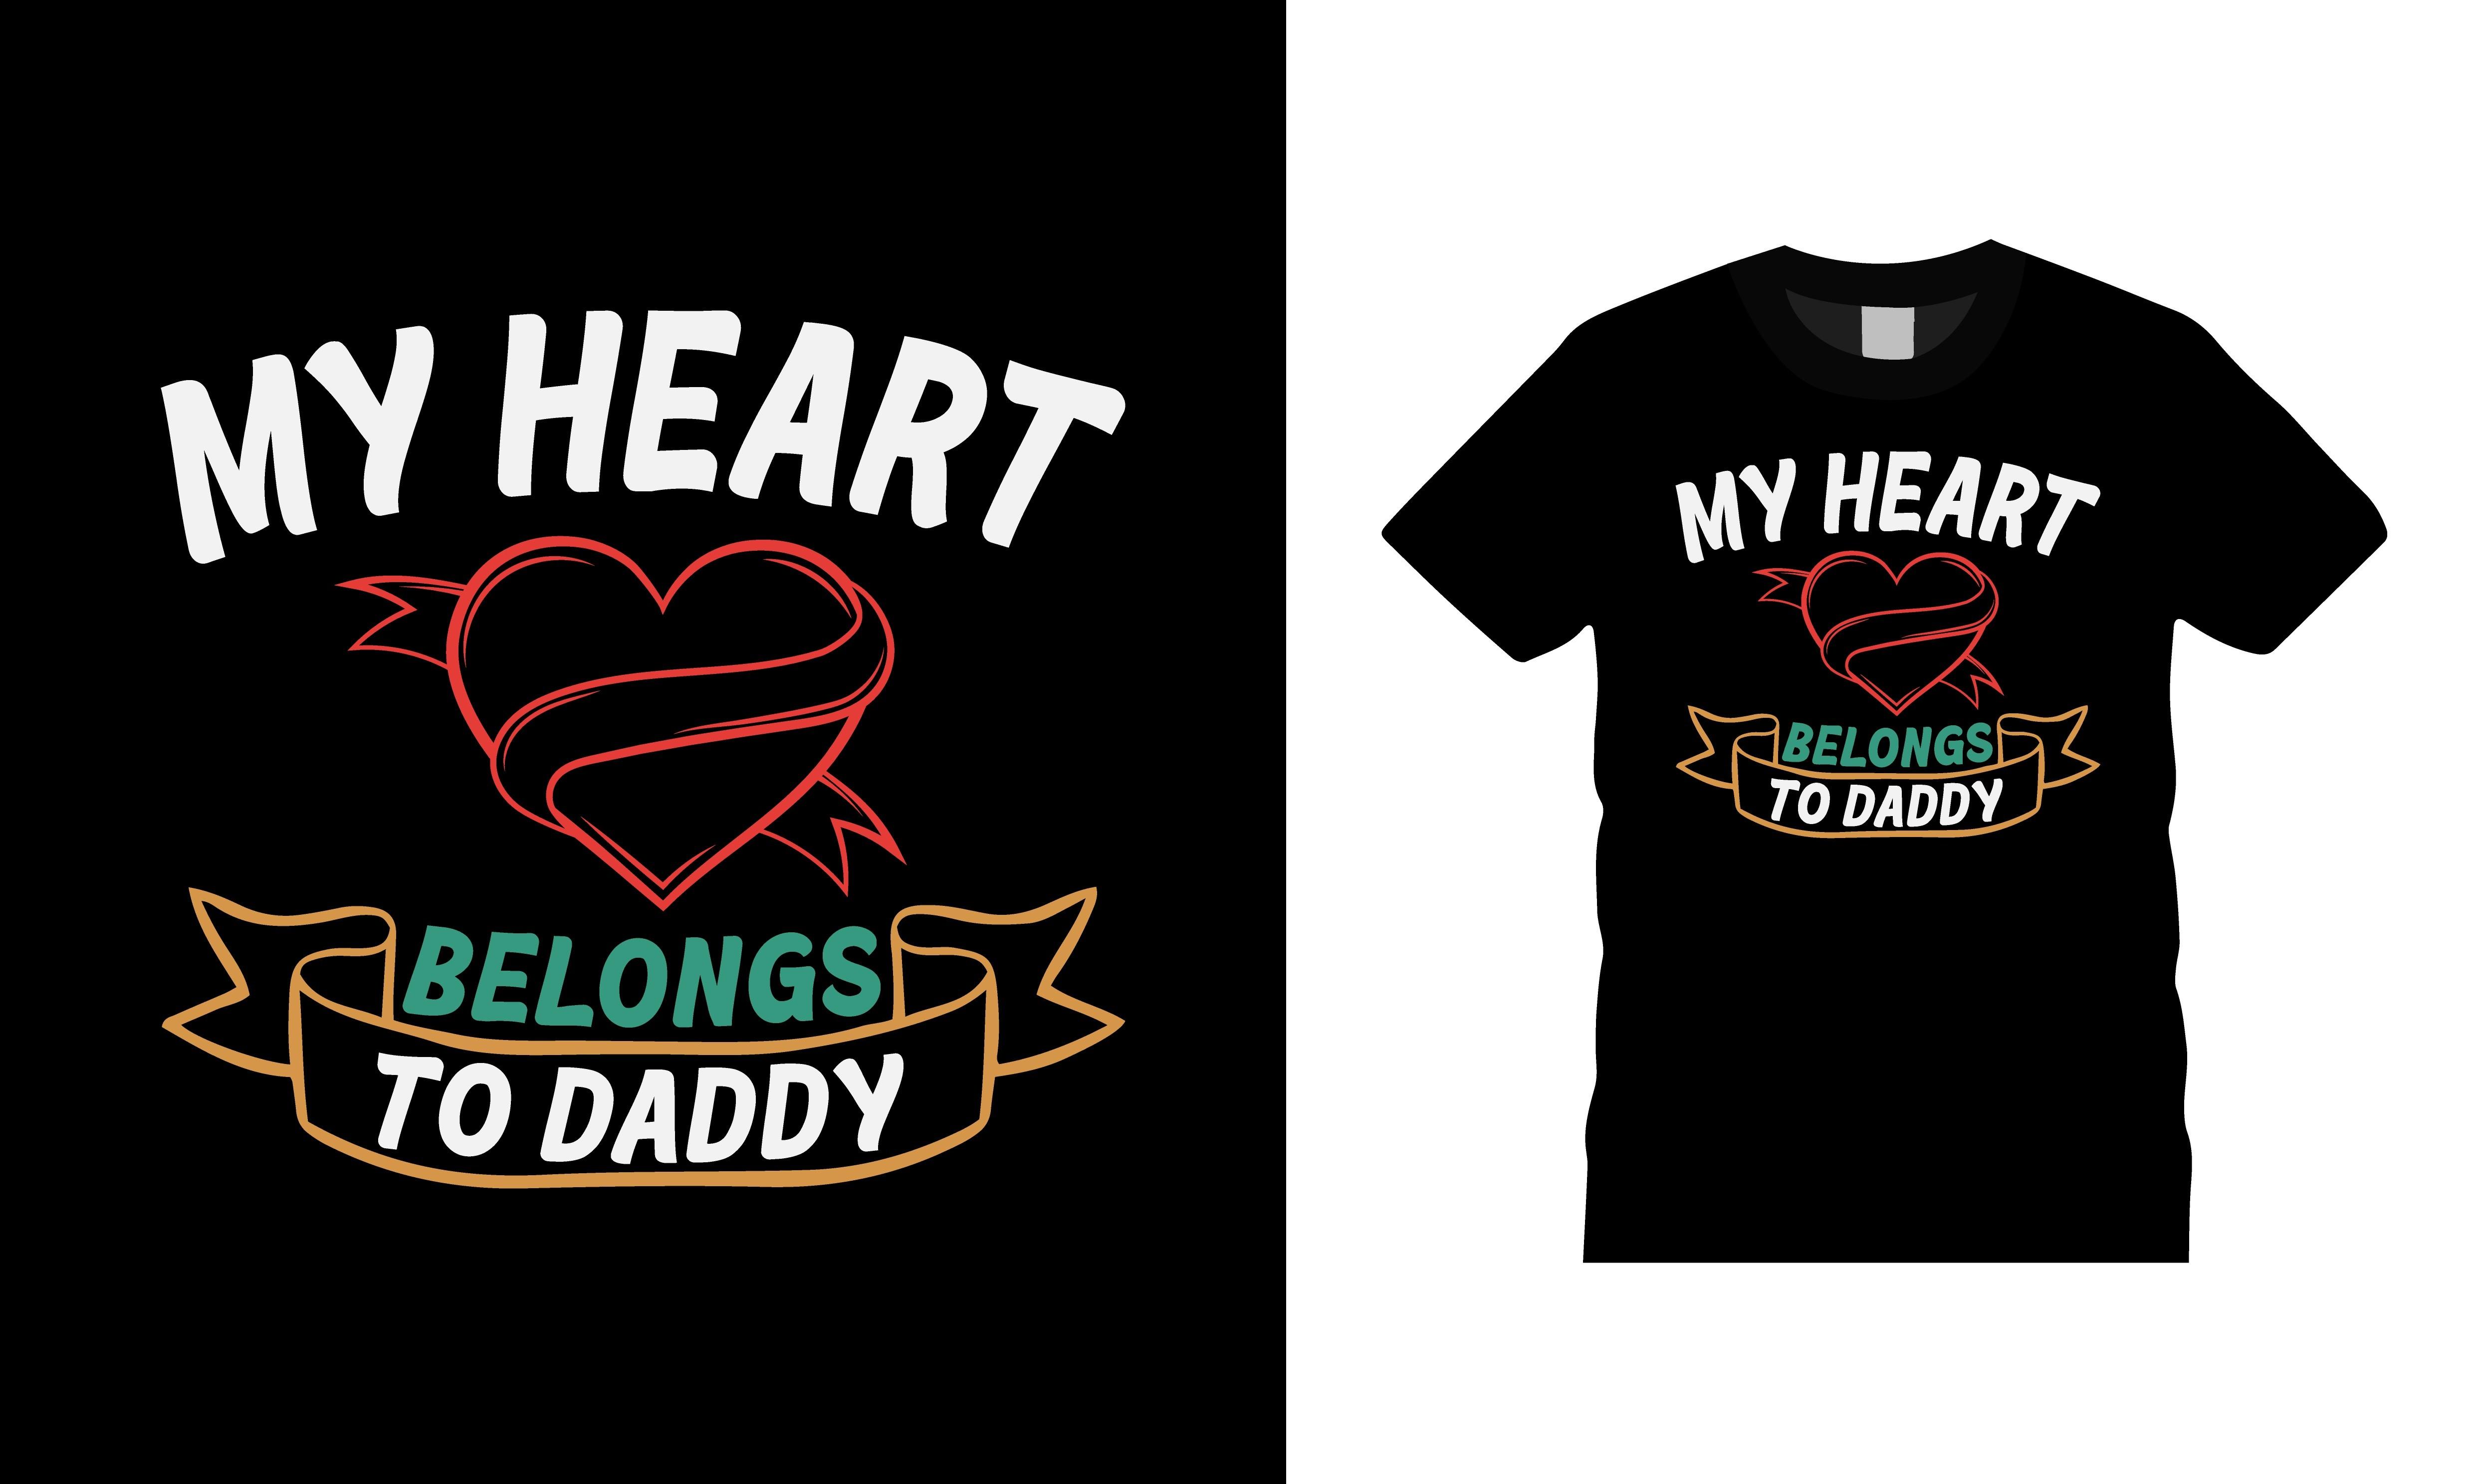 My Heart Belongs to Daddy T-shirt Design